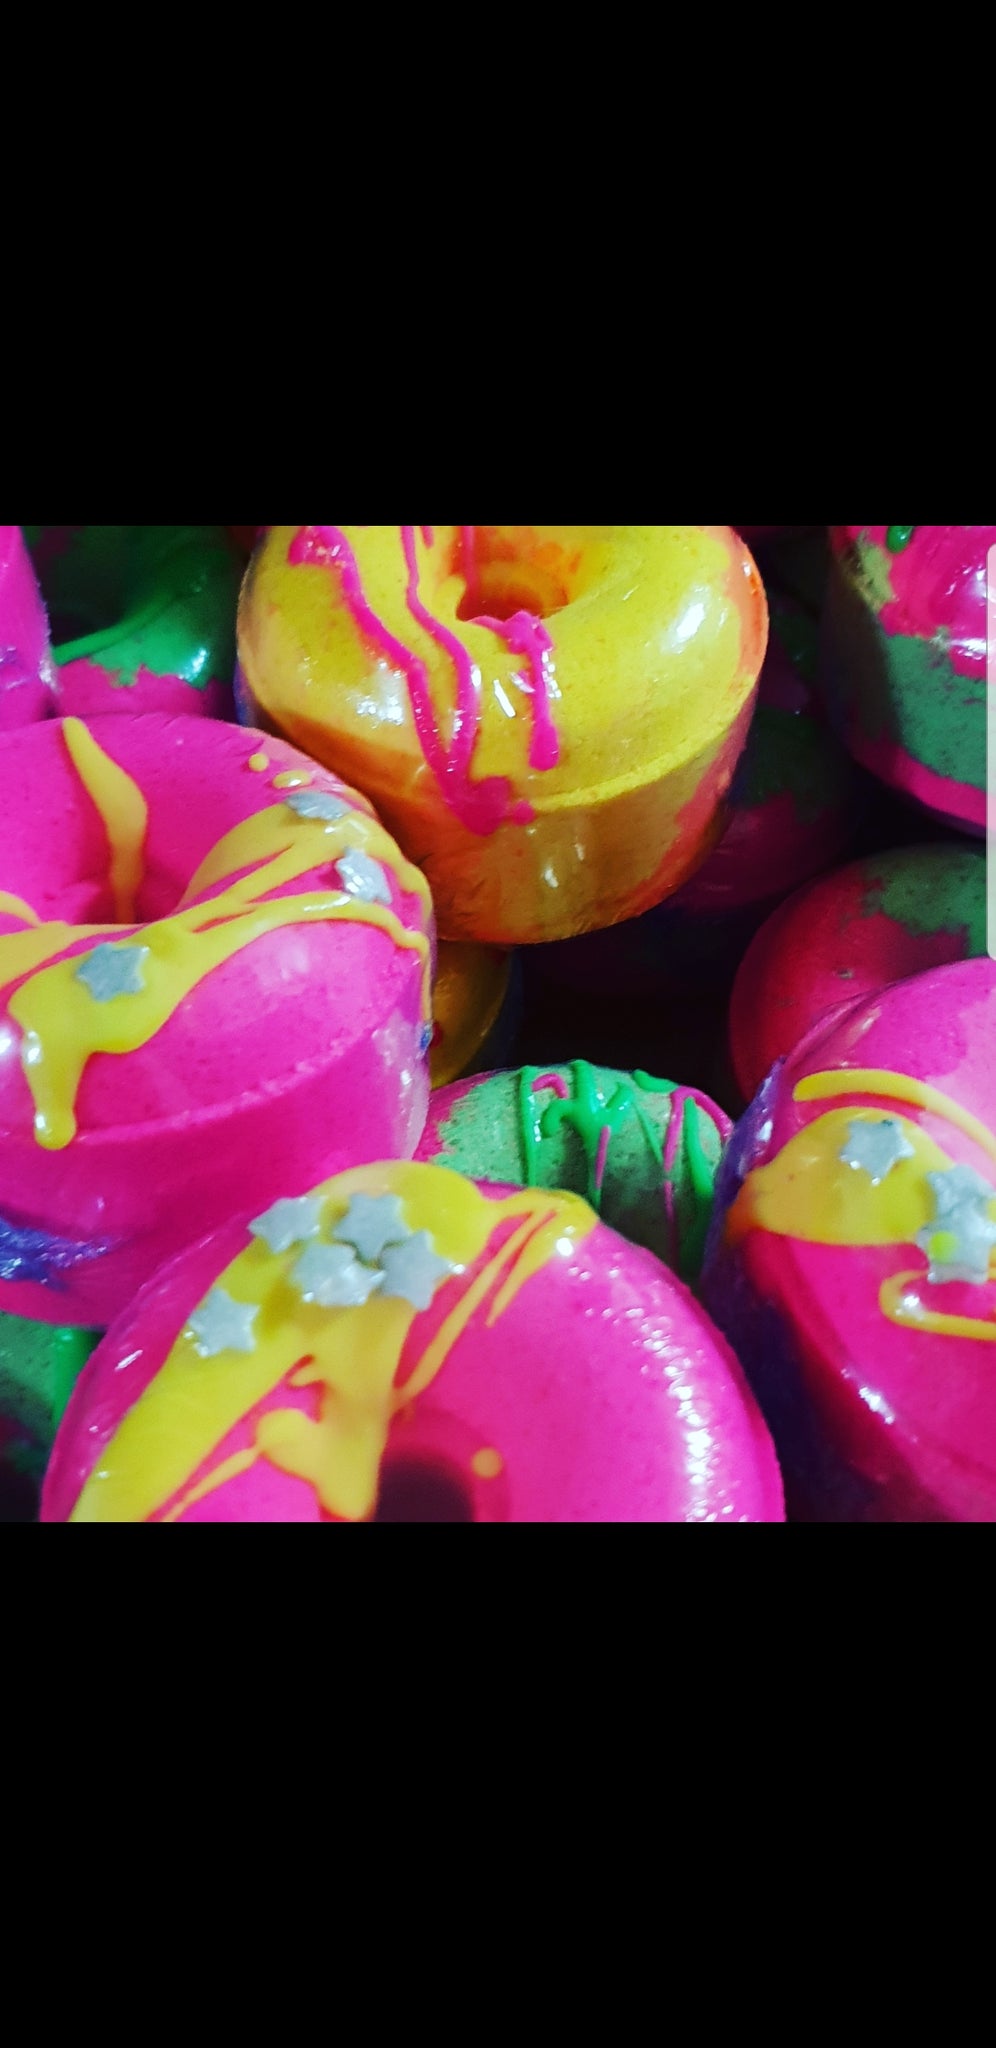 Donut bath bombs